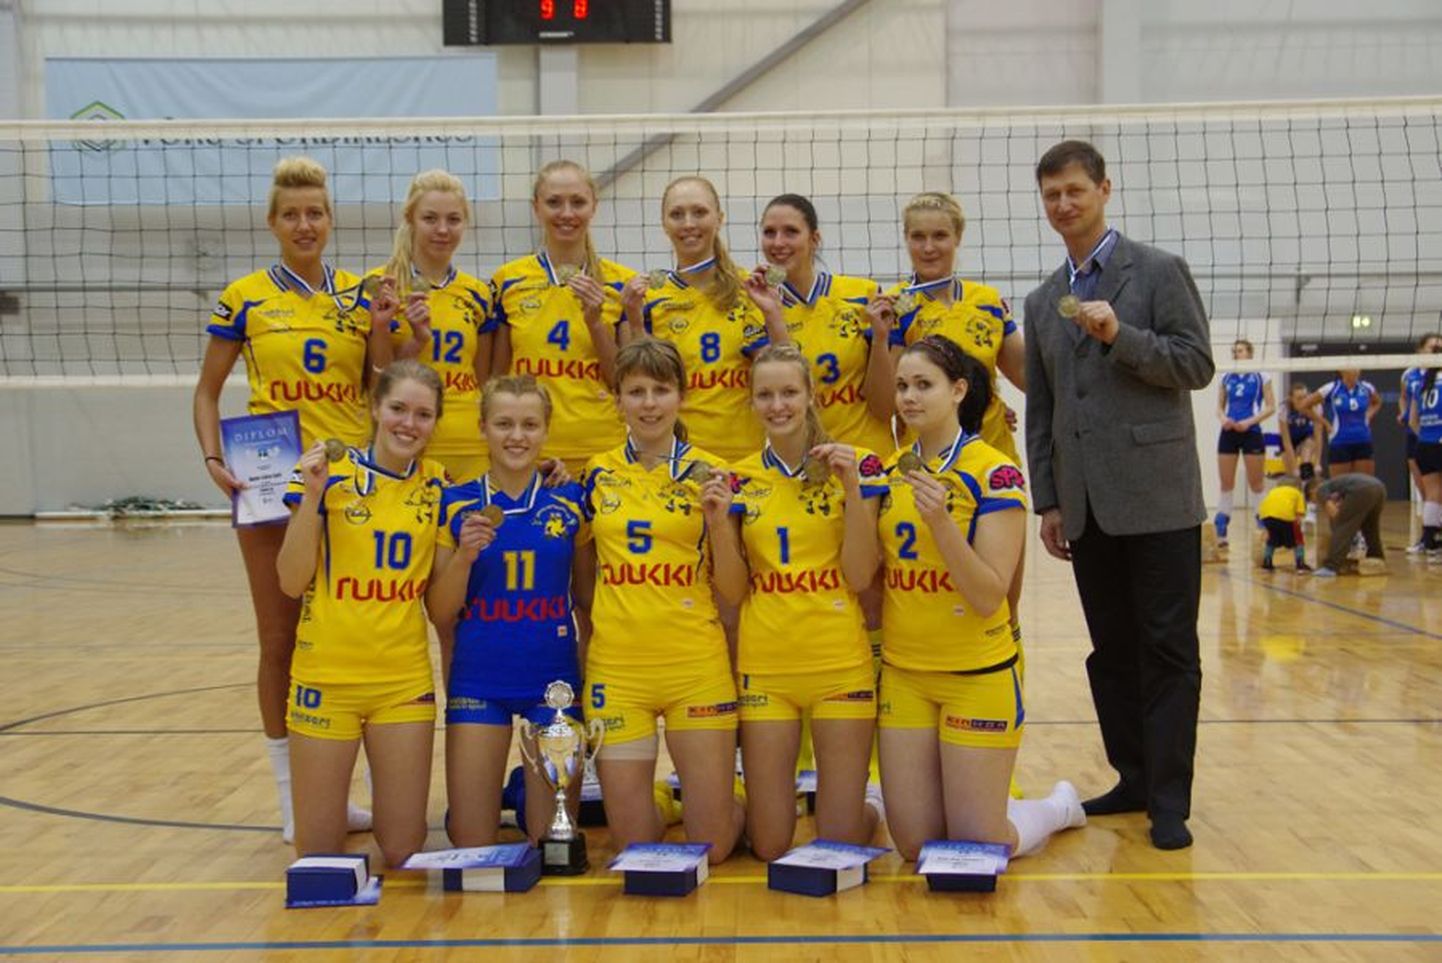 Pärnu võrkpalliklubi naiskond võitis Eesti meistrivõistlustel pronksikarva medalid.